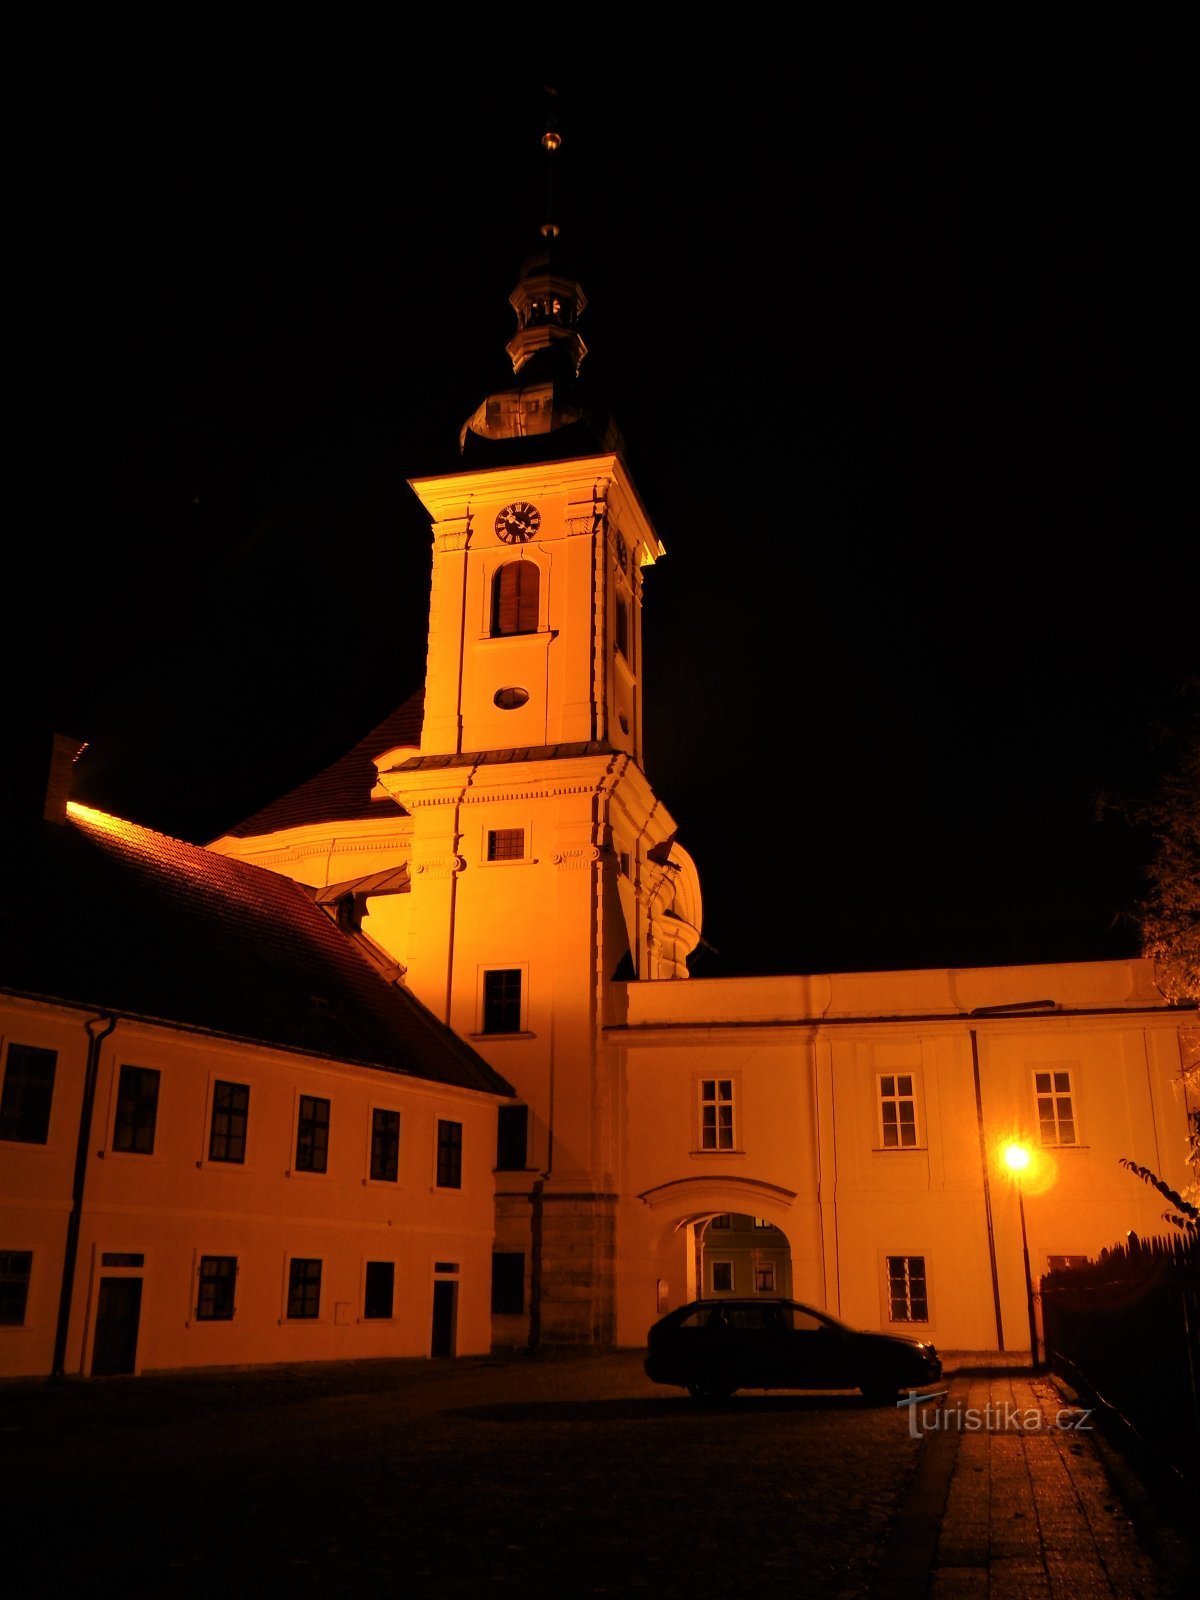 Dvorska crkva Bogojavljenja (Smiřice, 17.10.2020. lipnja XNUMX.)